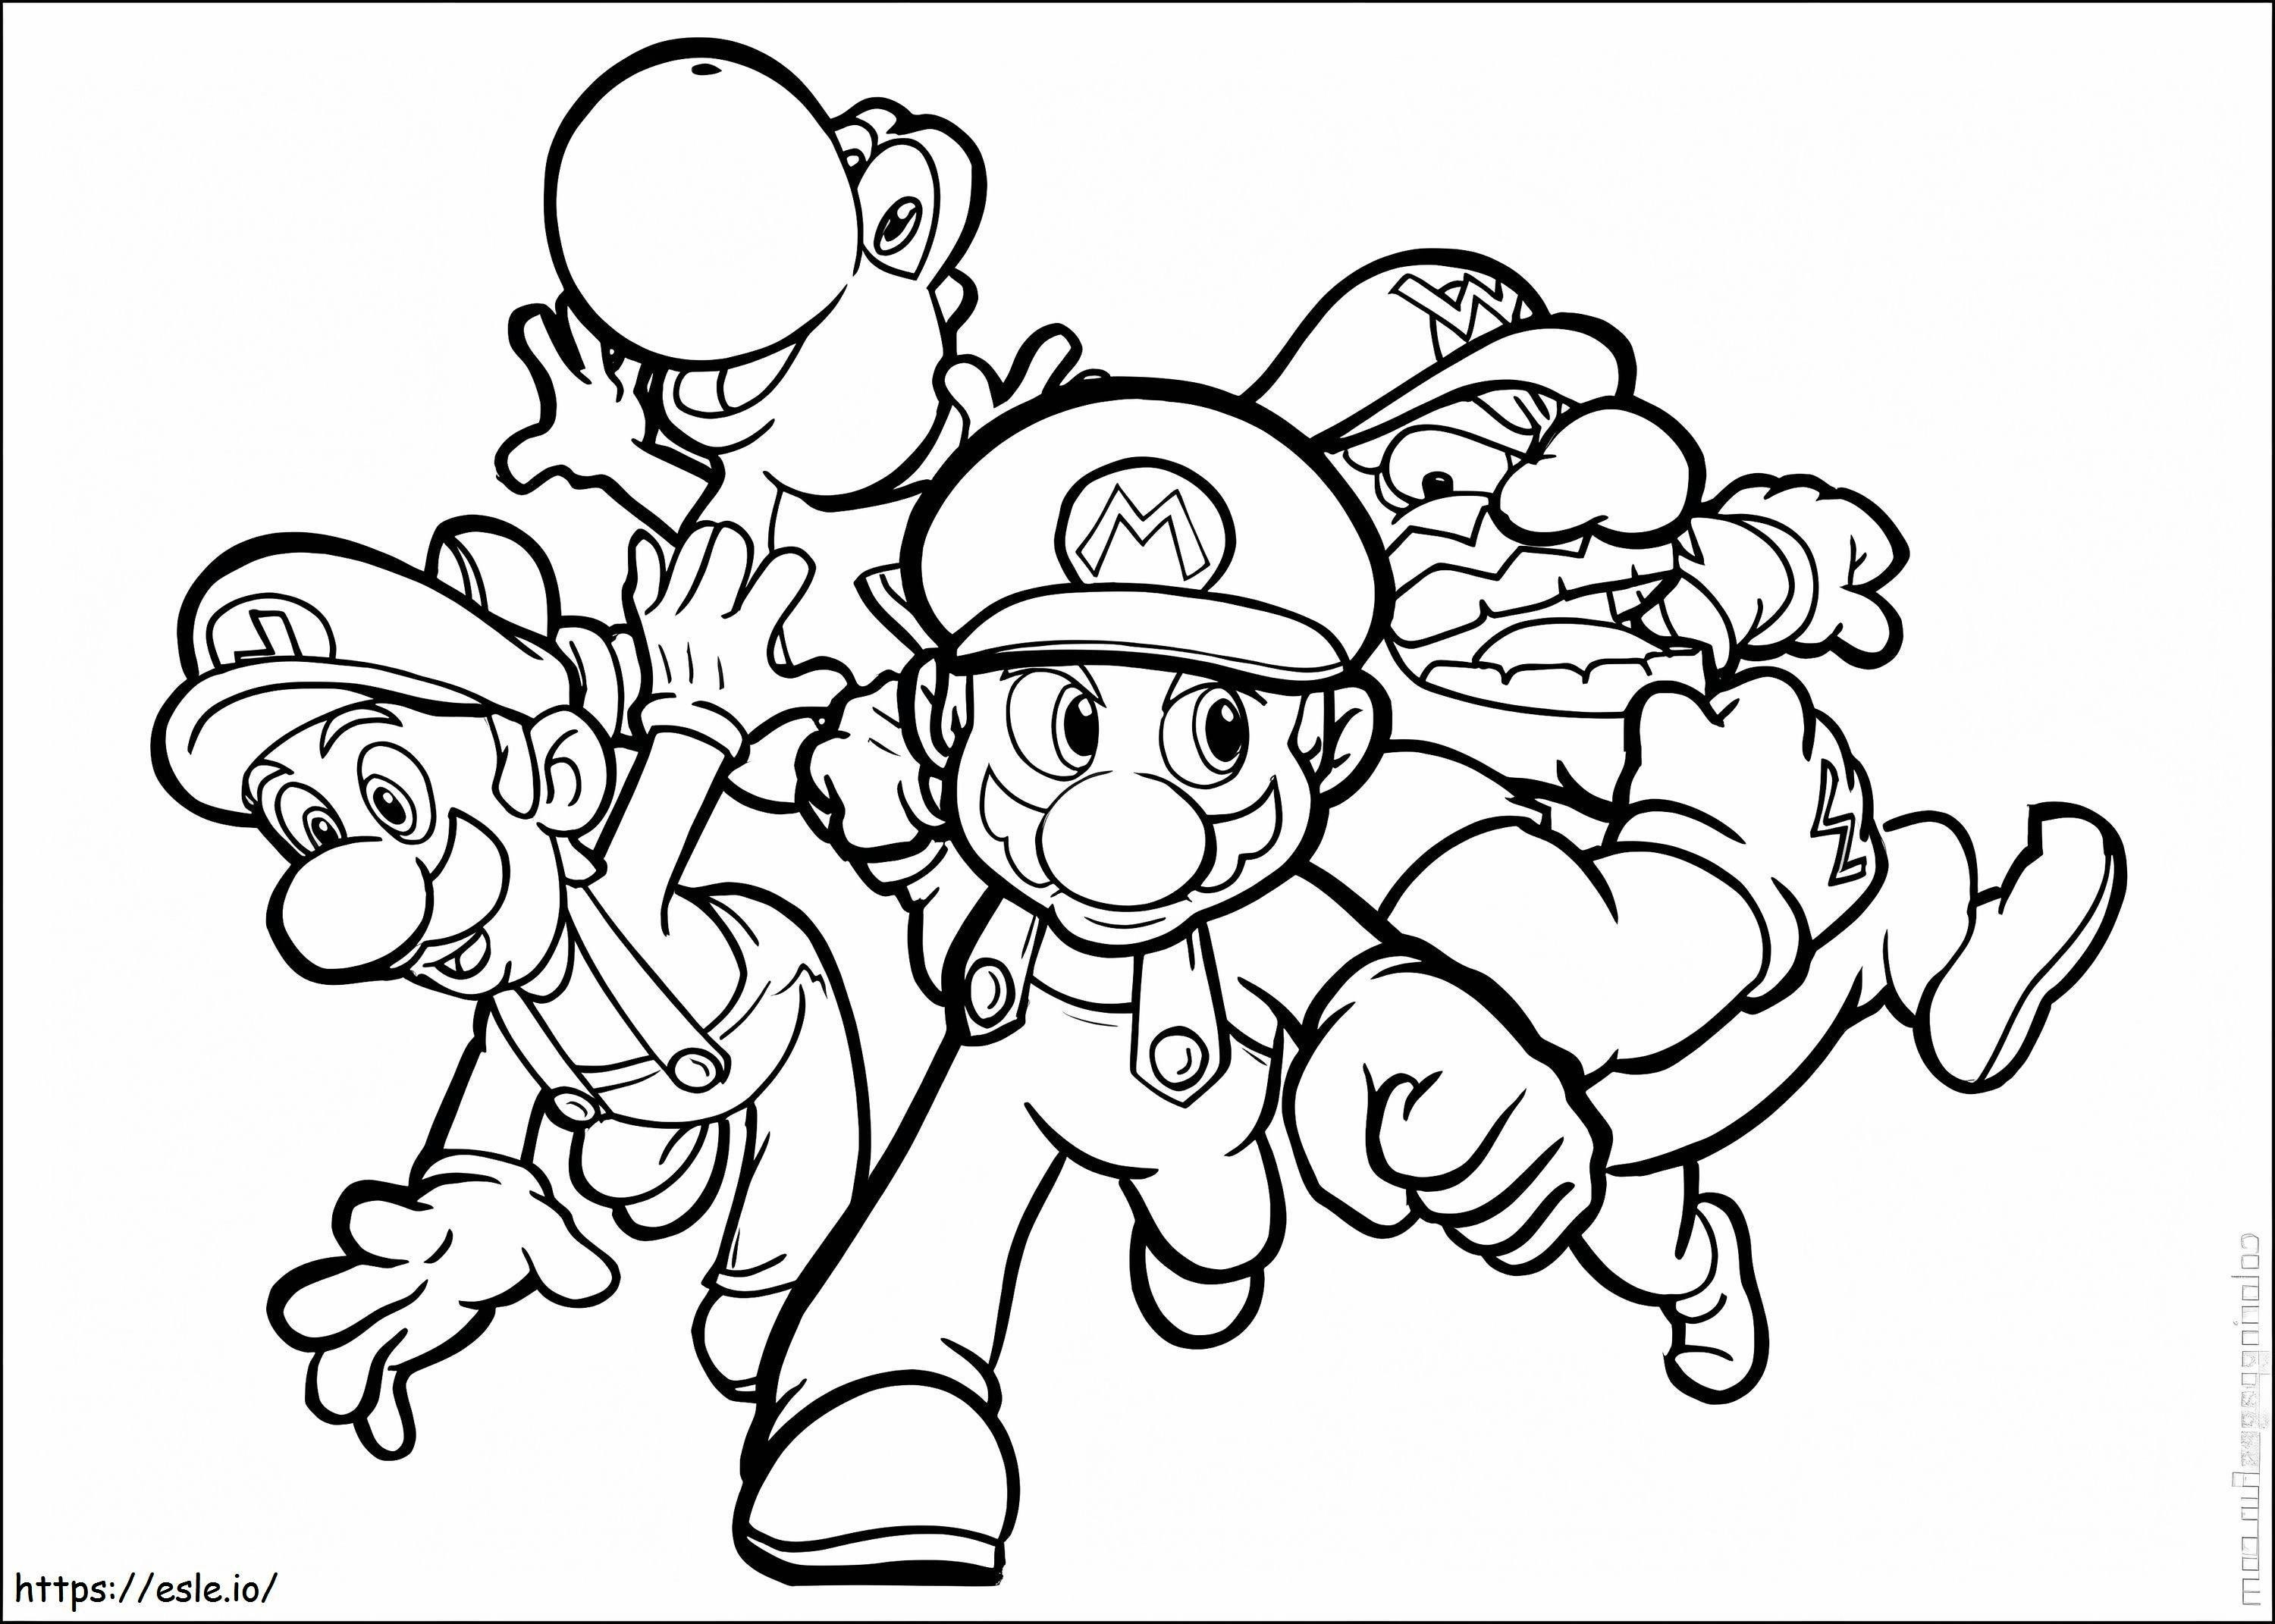 Luigi i przyjaciele biegają kolorowanka